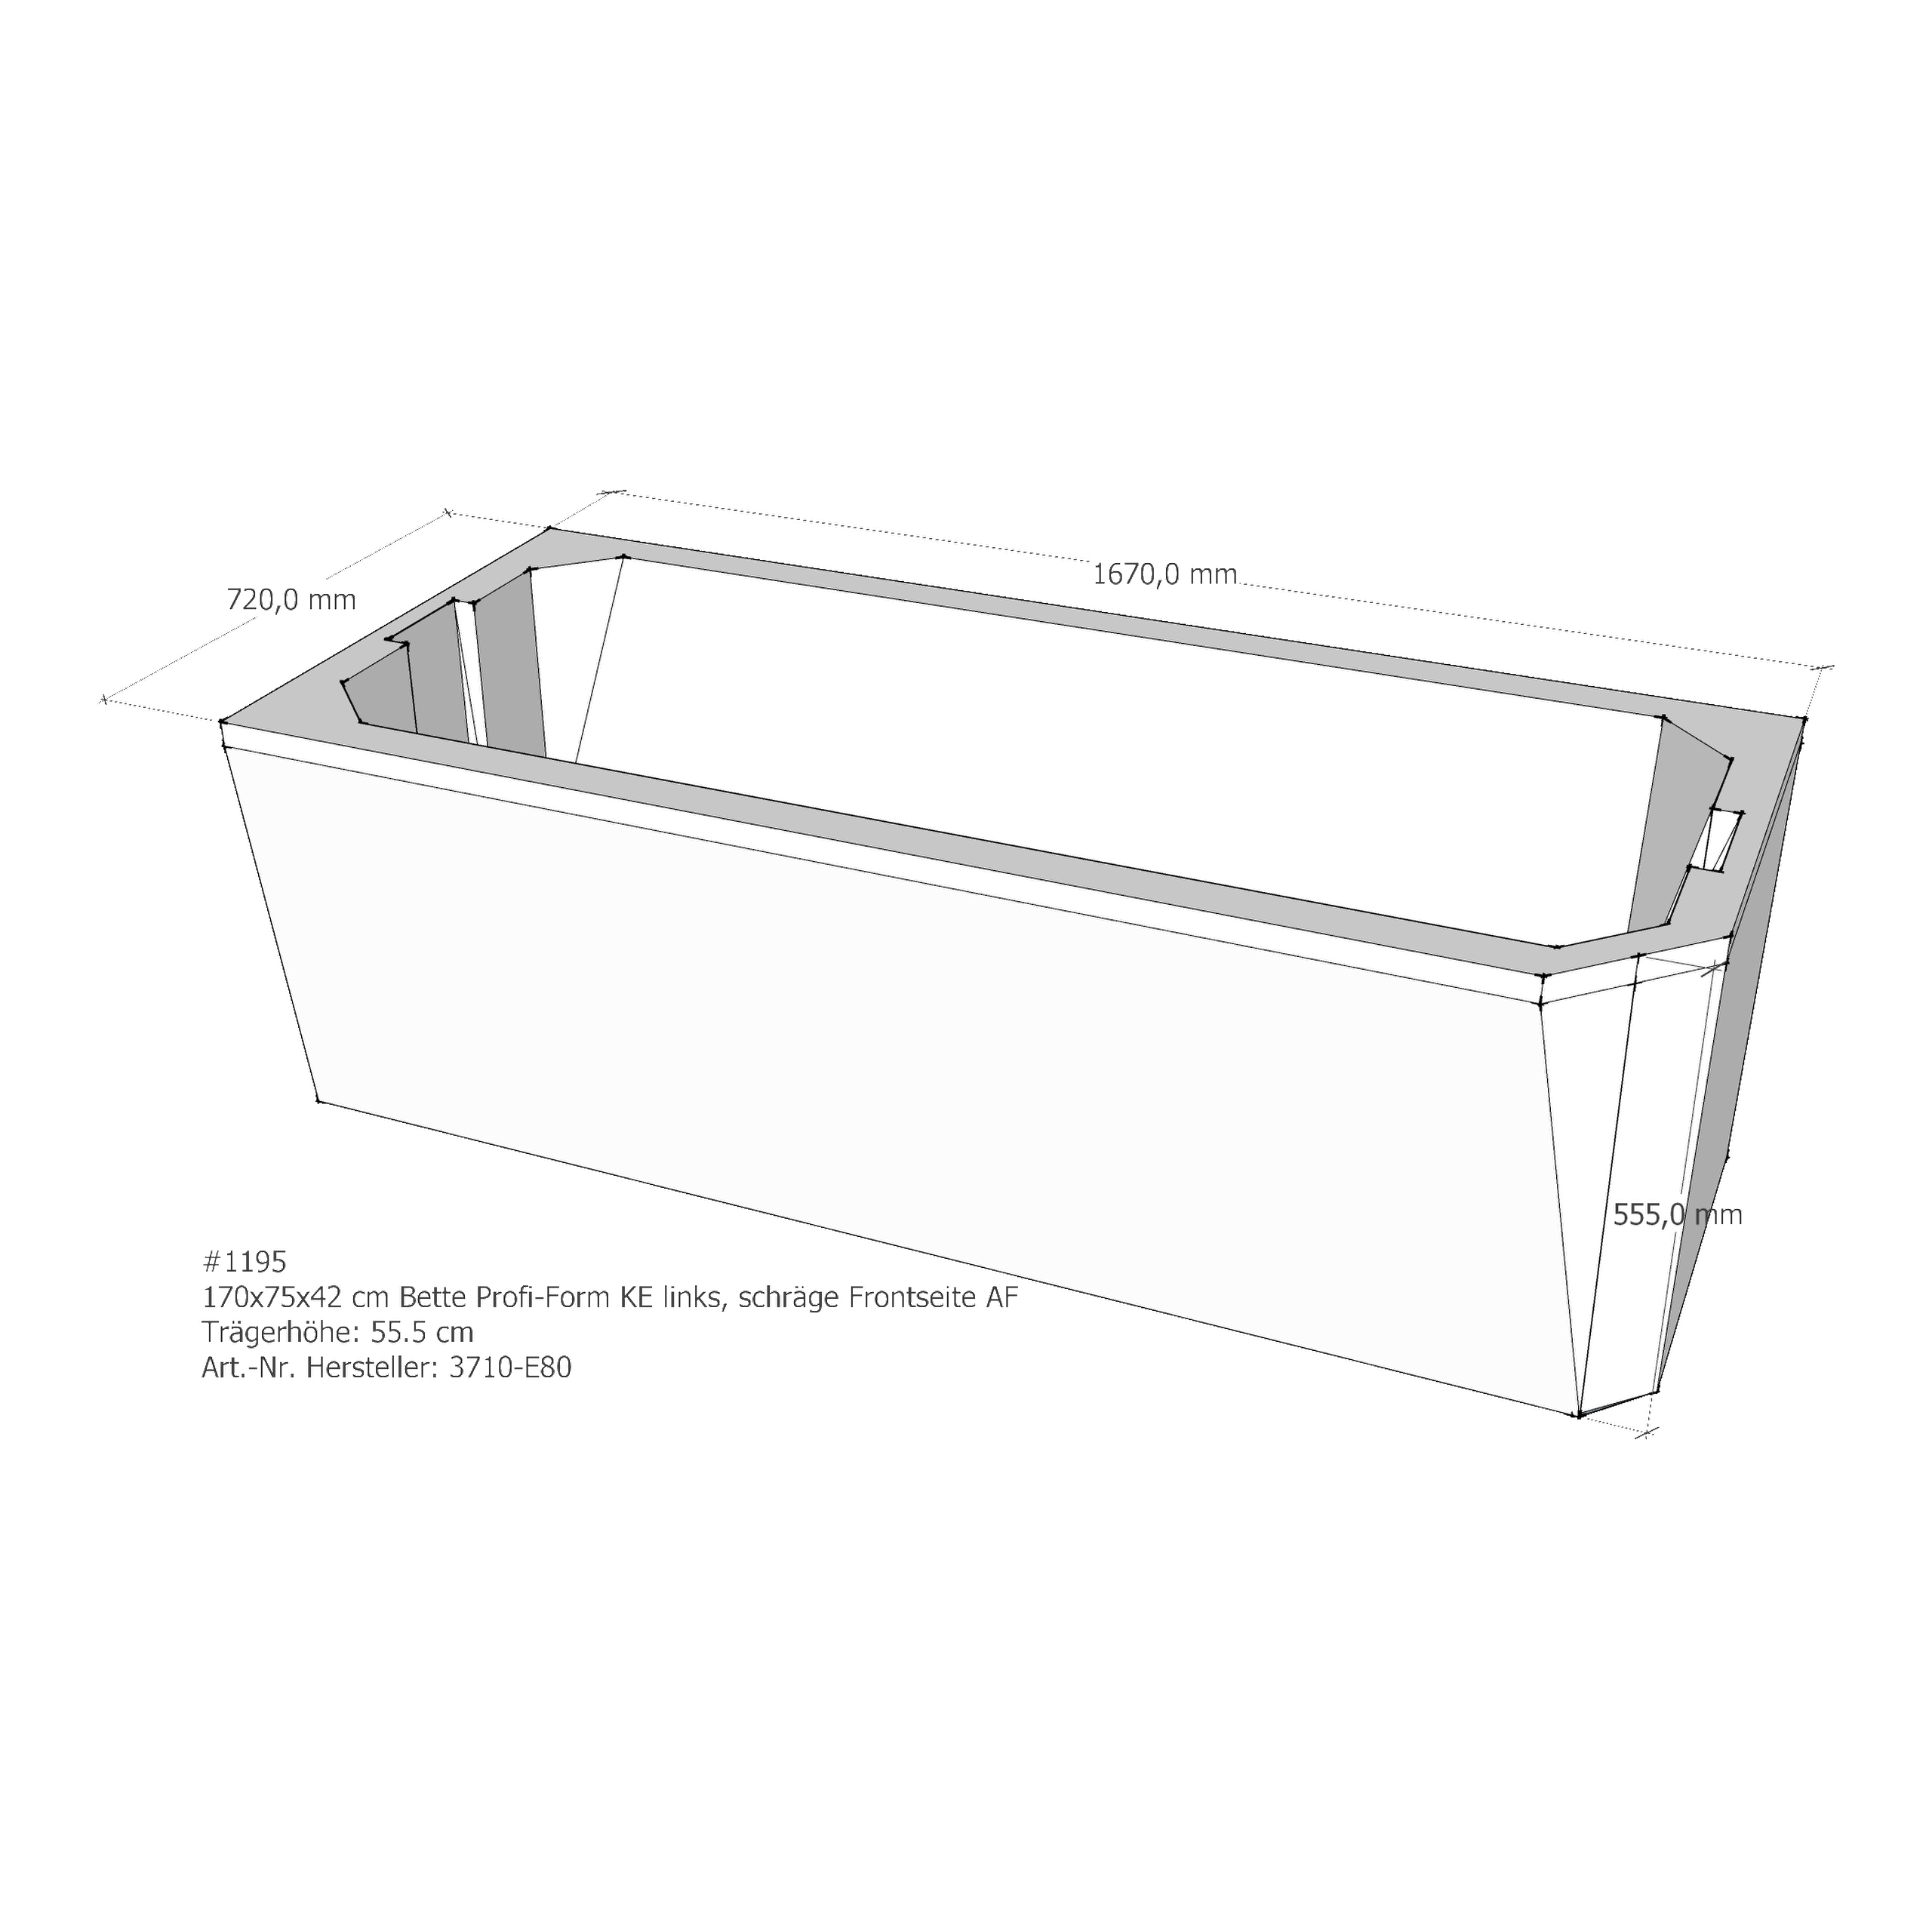 Badewannenträger für Bette BetteProfi-Form KE links 170 × 75 × 42 cm